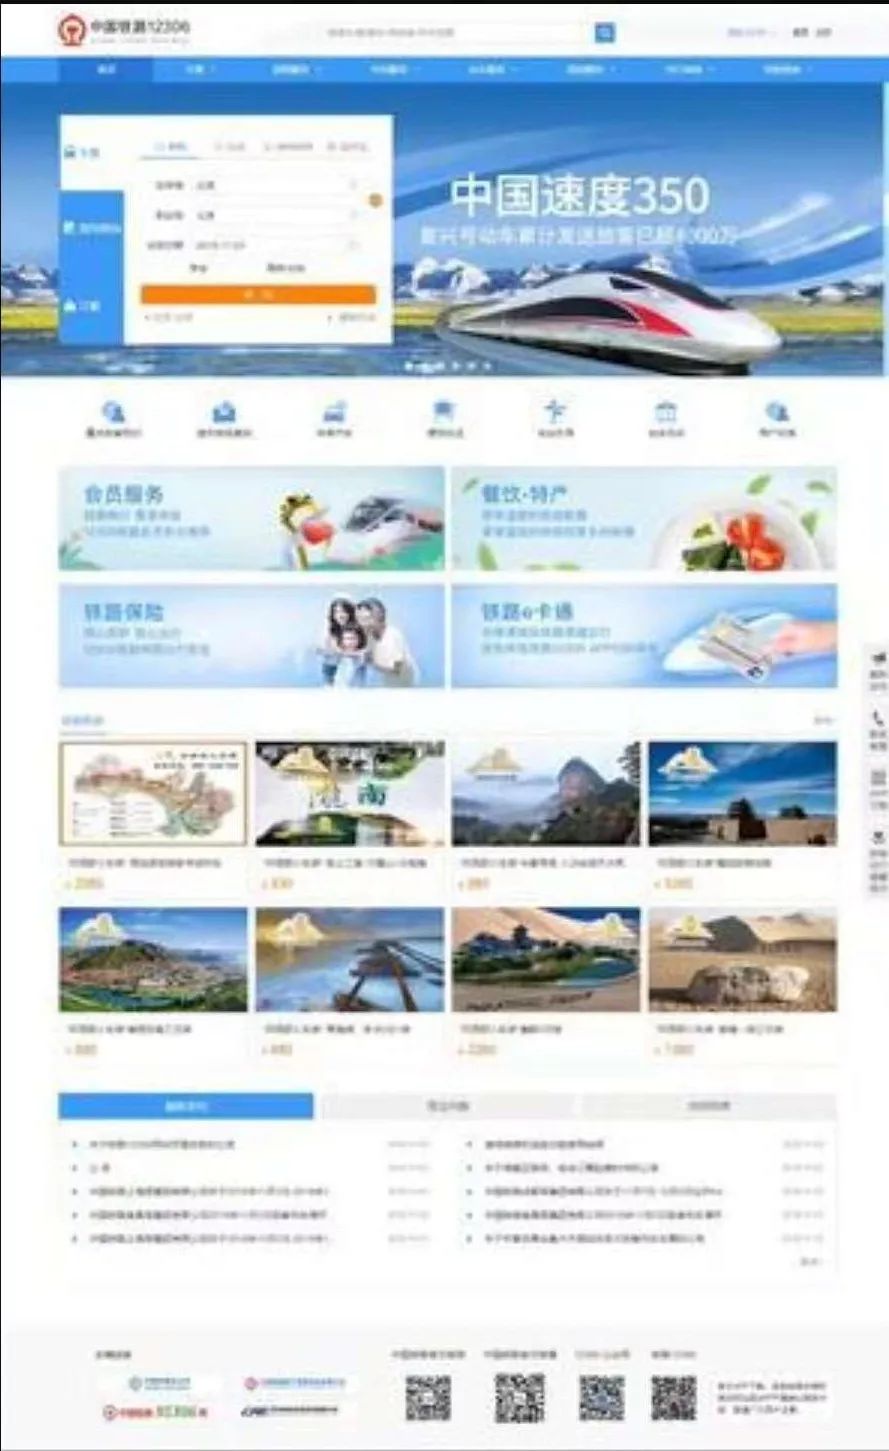 中铁12优发国际306网站11月3日升级，新增密码登录功能